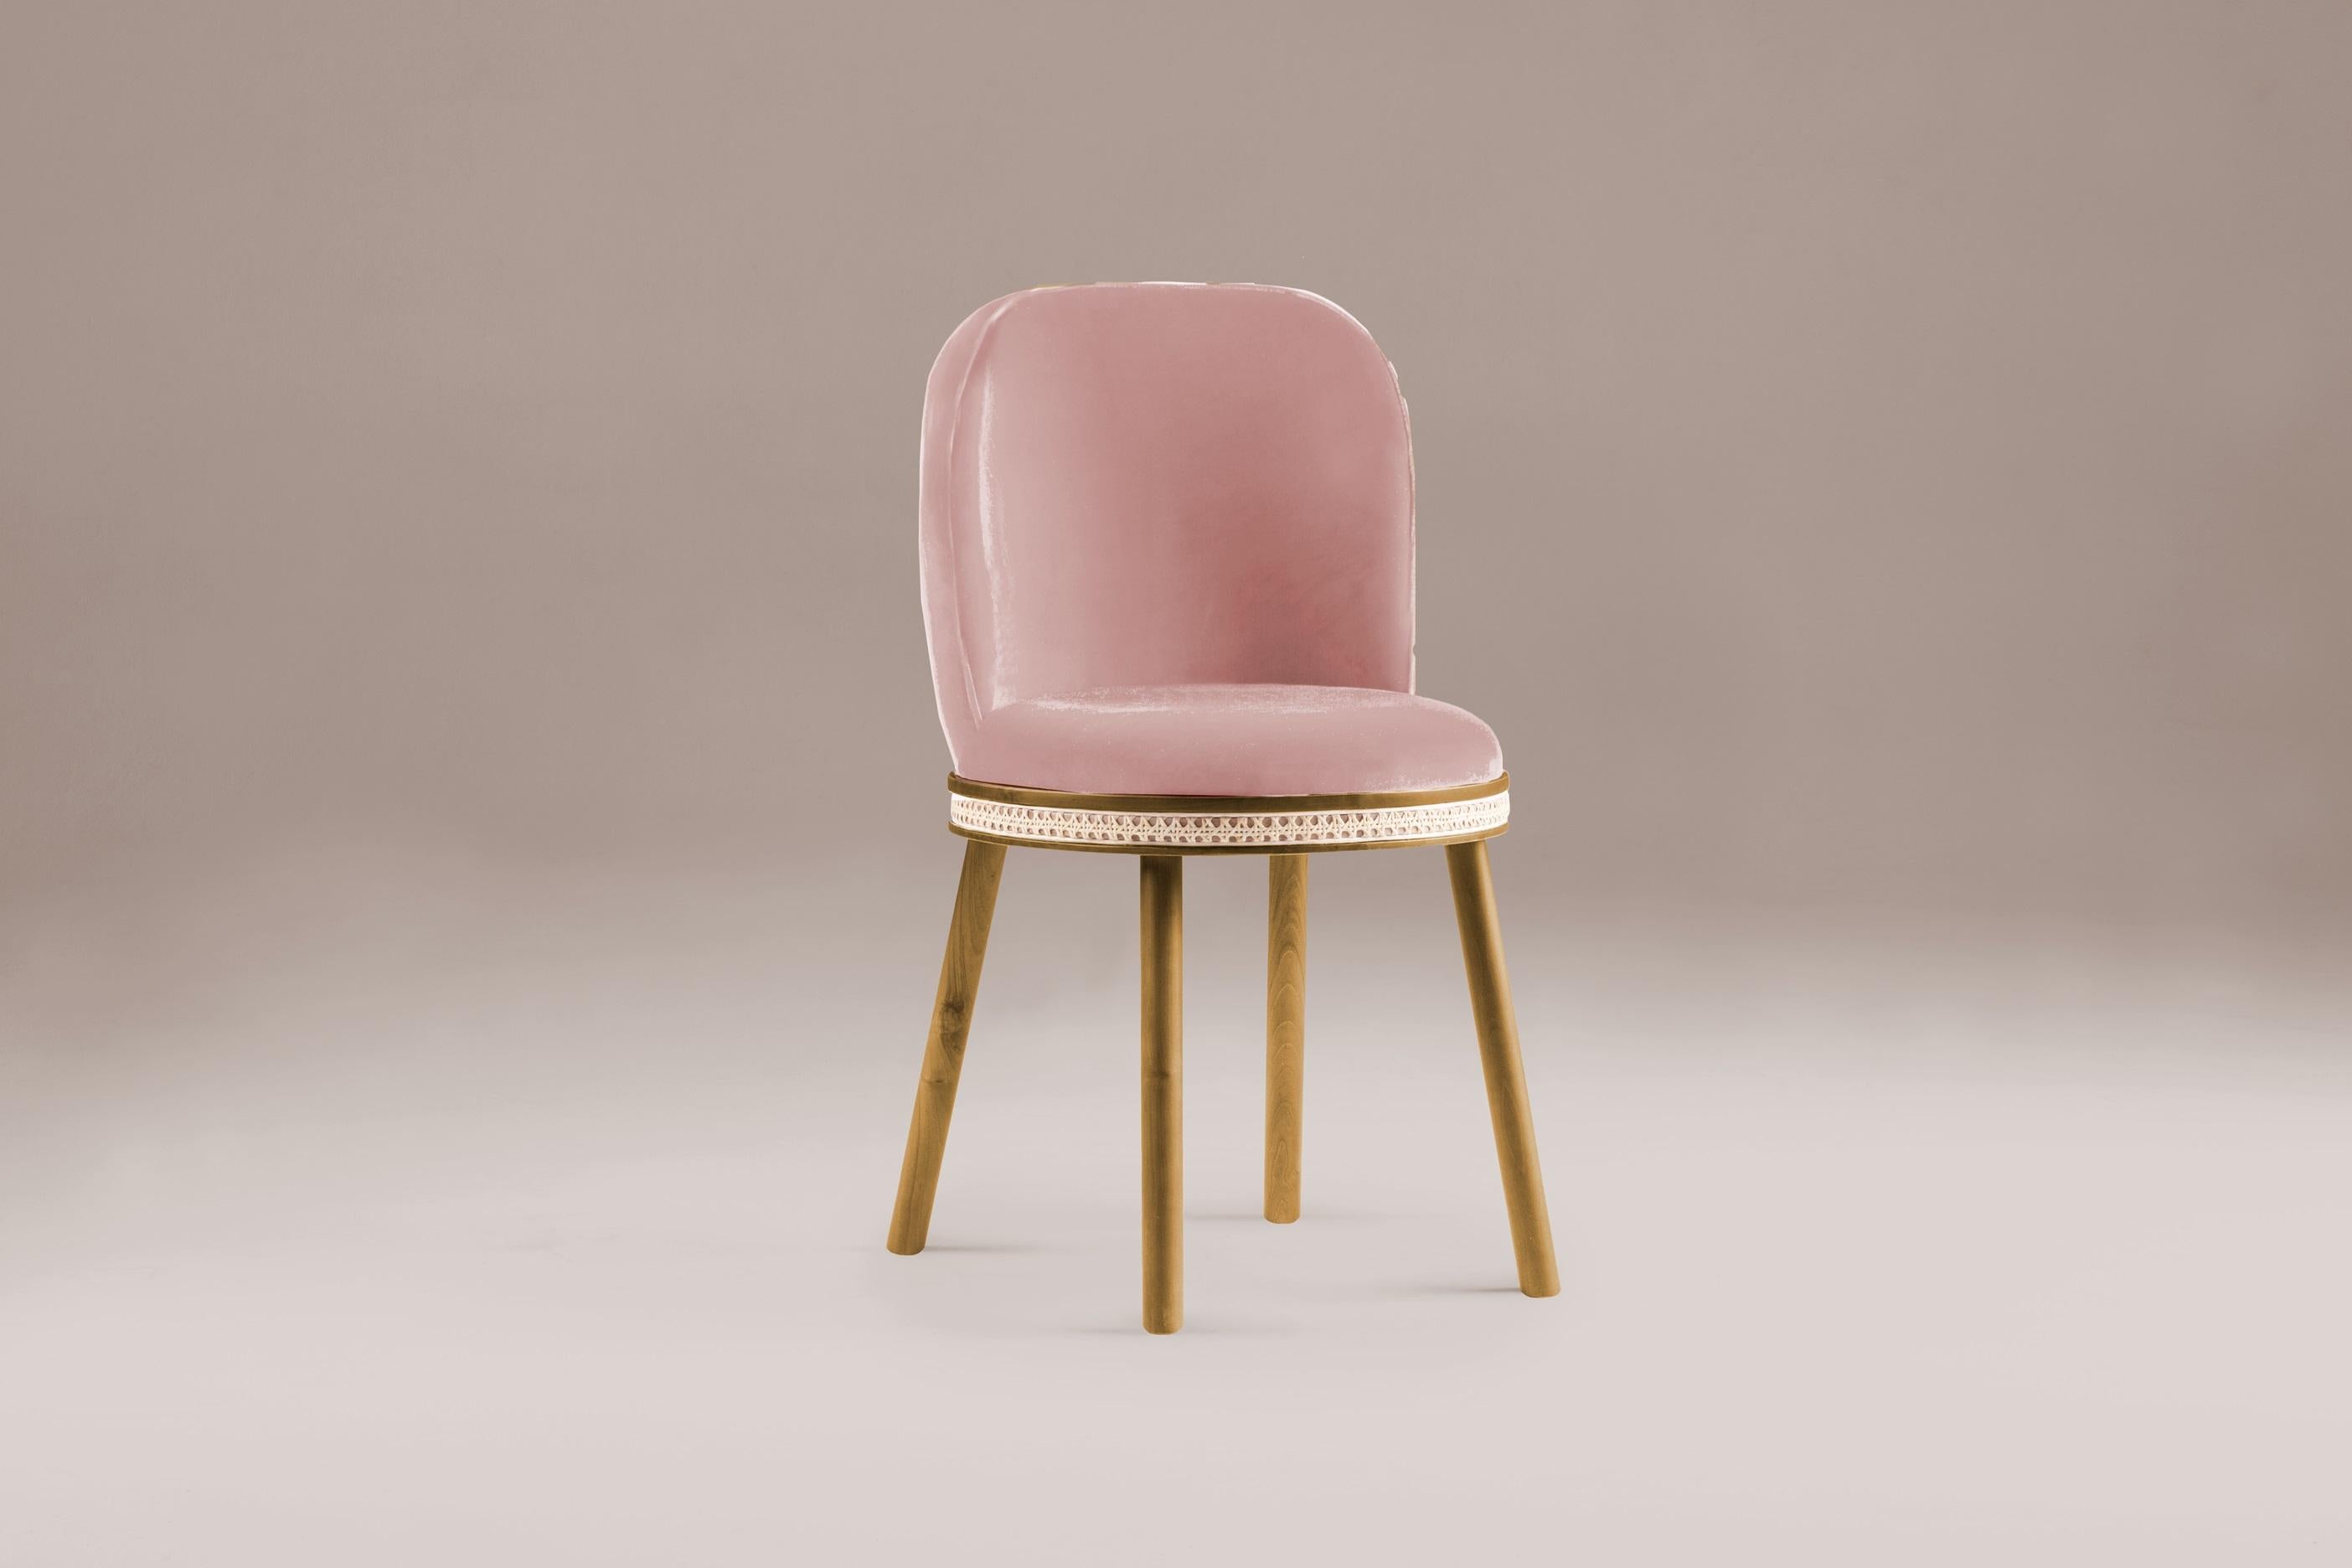 DOOQ Esszimmerstuhl Alma mit rosa Samt und Walnussholz Mid-Century Modern.
Der Alma Stuhl ist in verschiedenen Stoffen und Holzausführungen erhältlich.
In einem Stück, das klassische und moderne Ästhetik verbindet, finden wir eine gewisse